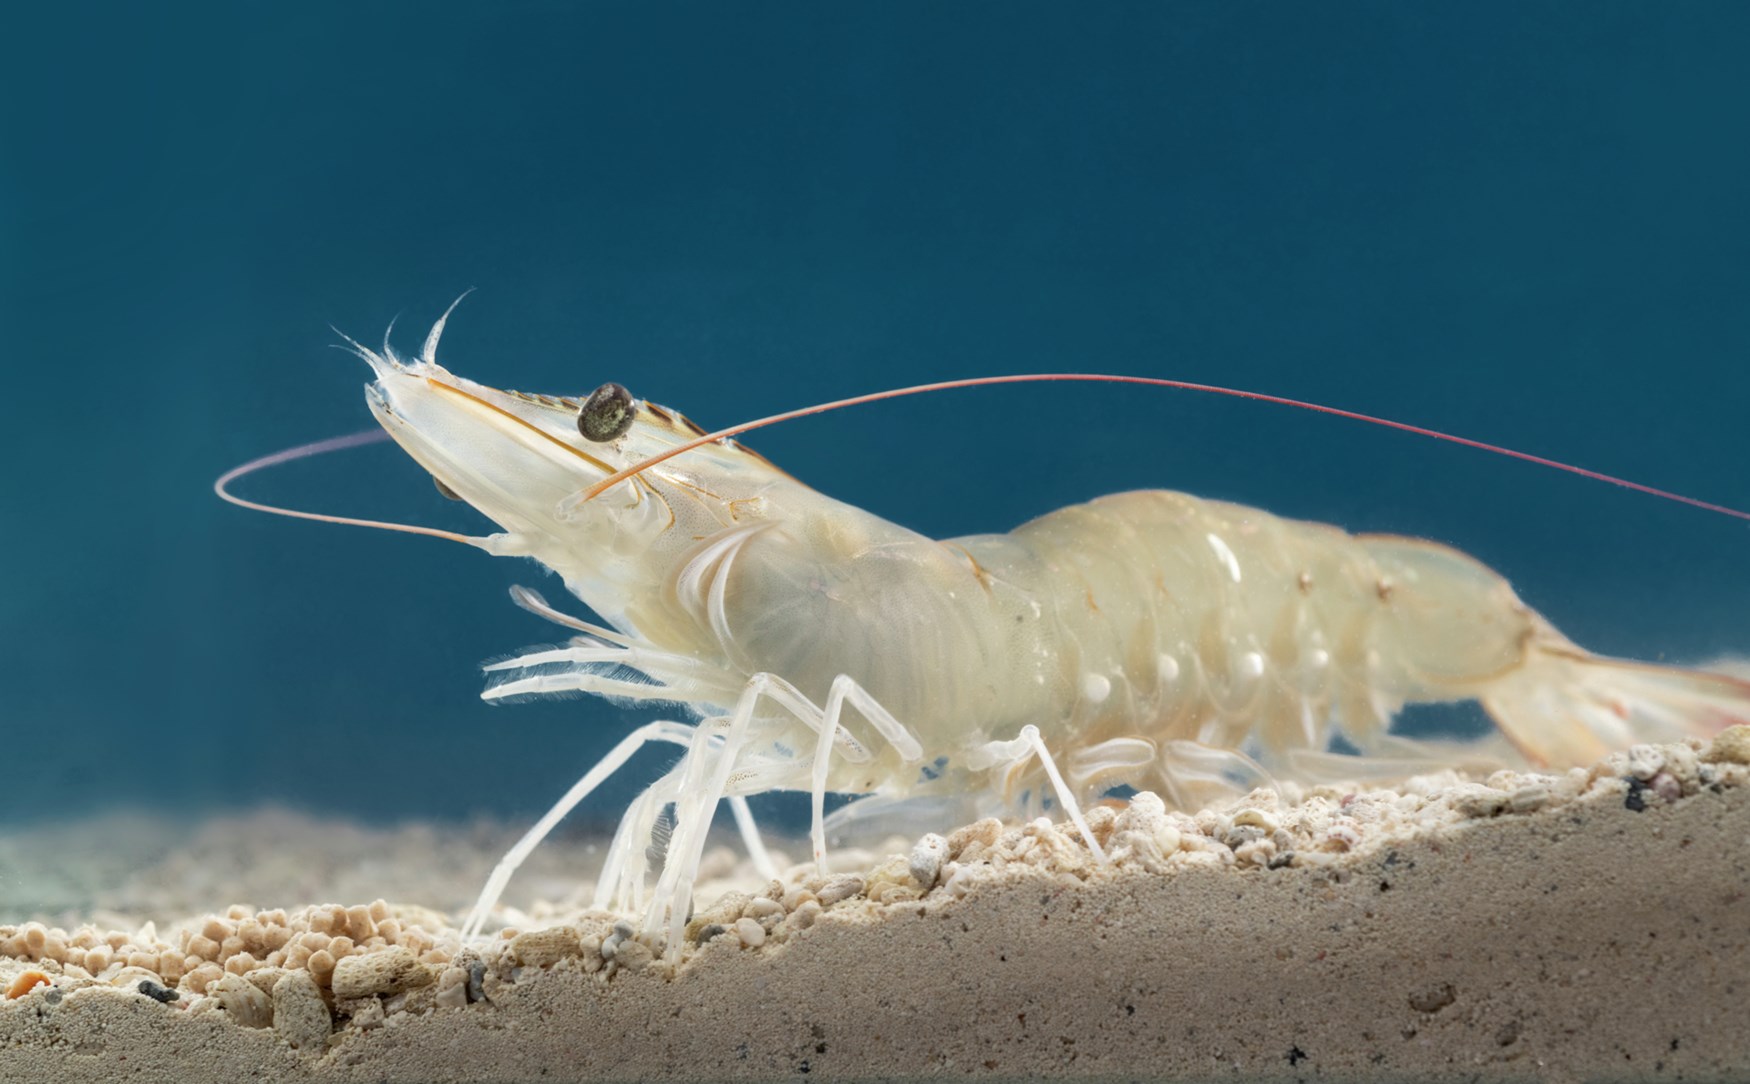 Whiteleg shrimp on sand underwater